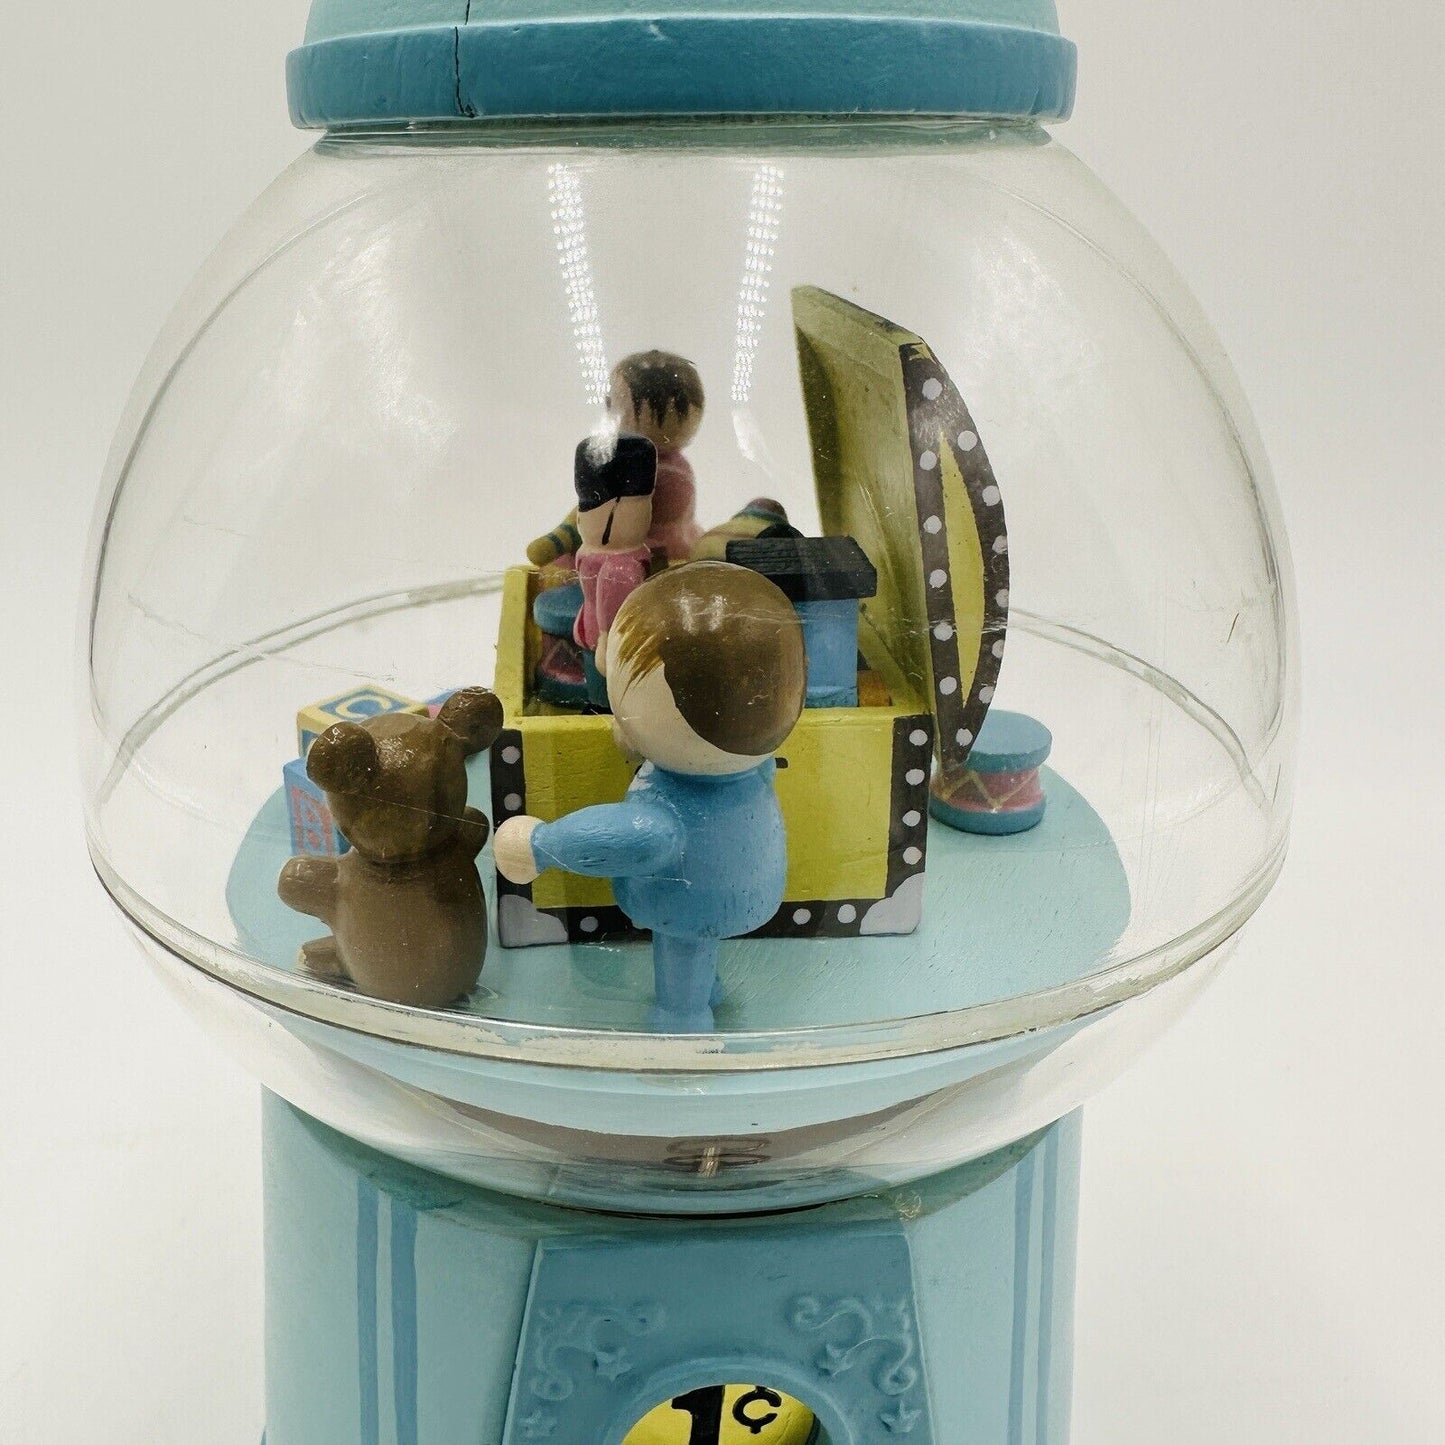 Gumball Machine Music Box Enesco "Children Marching" Animated Carousel Movement